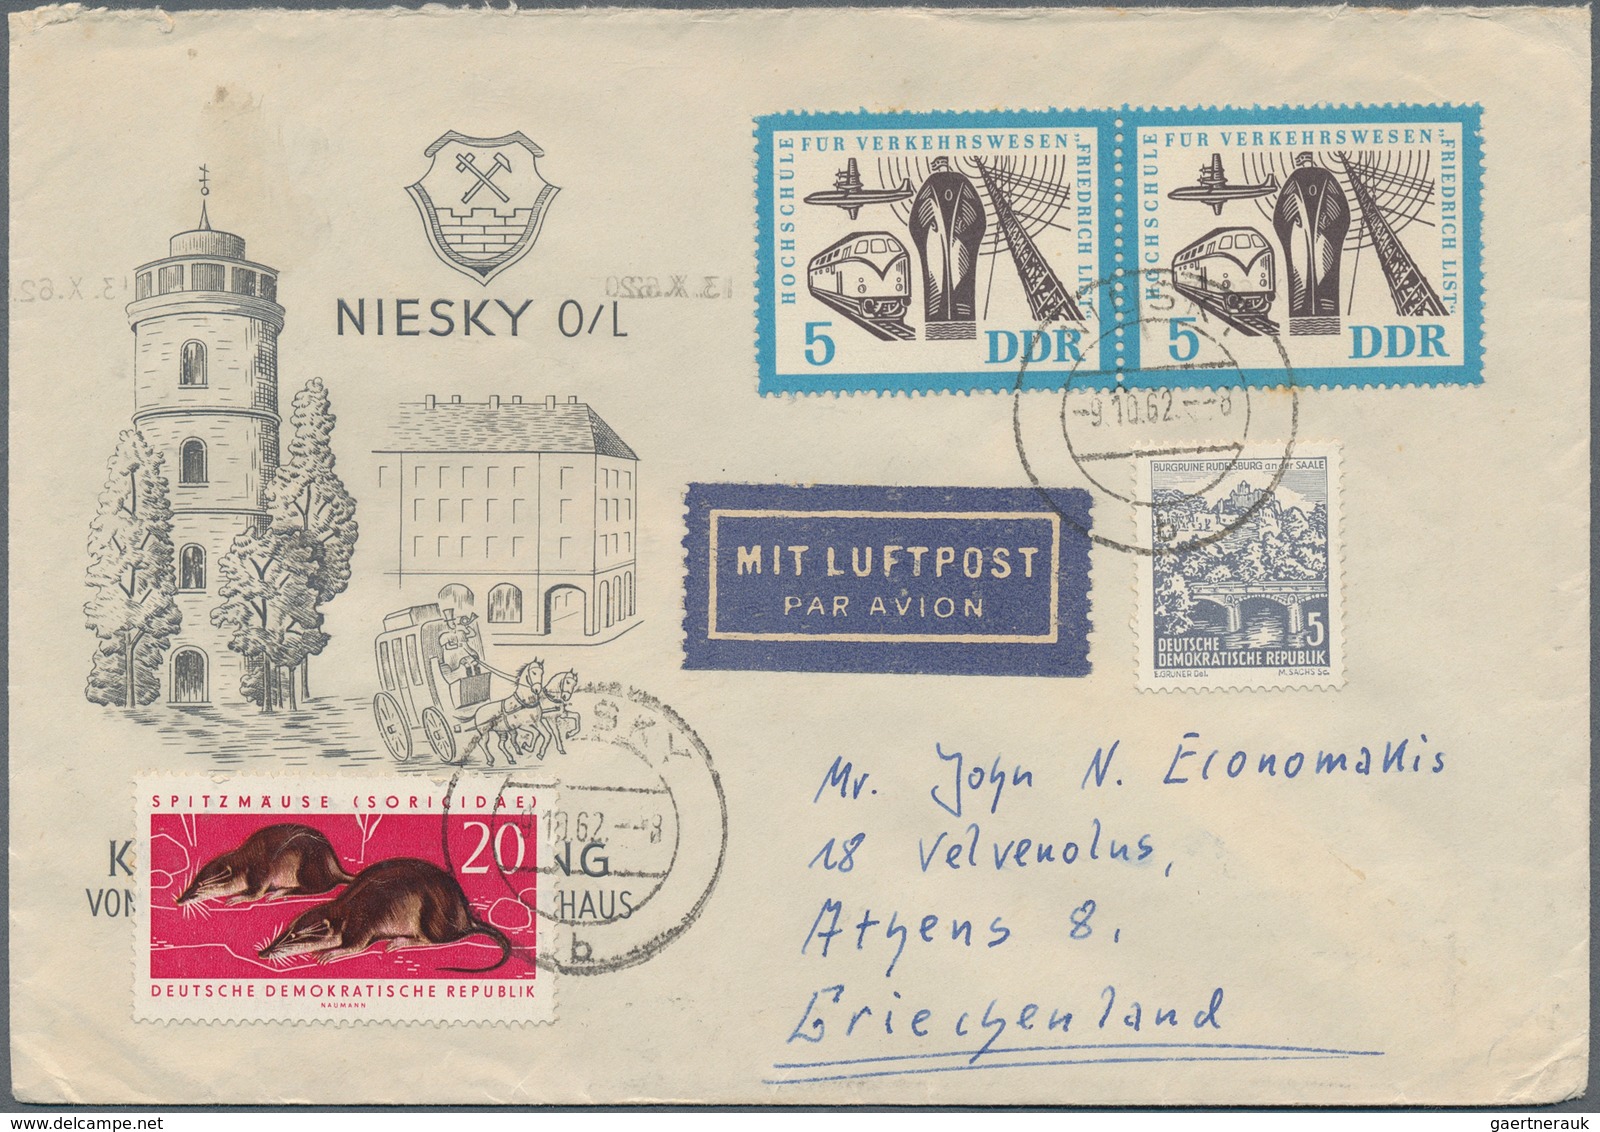 32163 Deutschland nach 1945: 1946/2005 (ca.), Posten von ca. 500 Briefen/Karten/Ganzsachen, etwas Zonen un